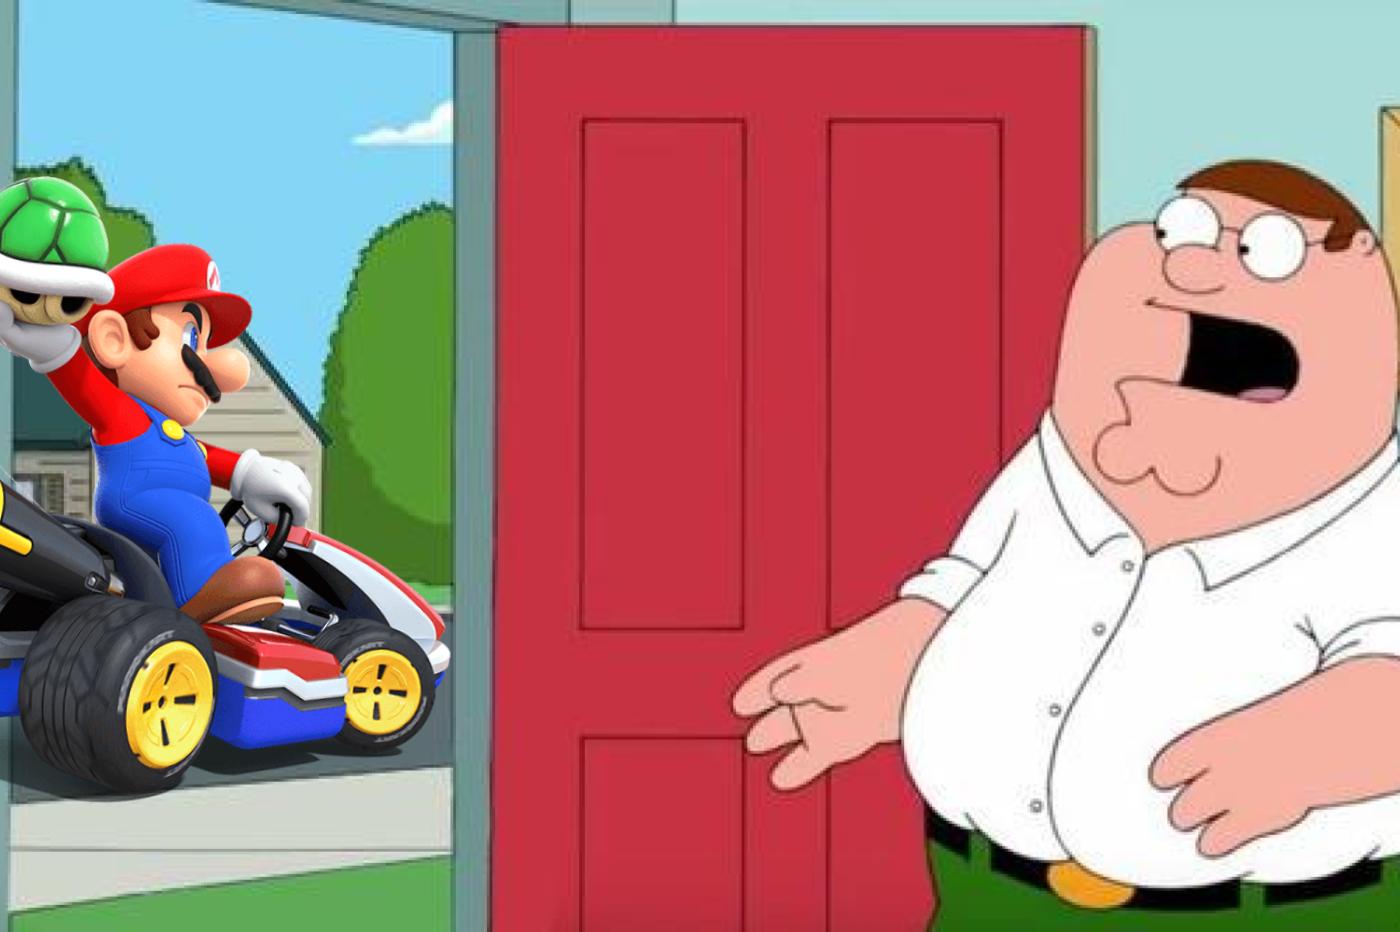 Peter Griffin de Family Guy devant sa porte, choqué de voir Mario conduire dans sa rue